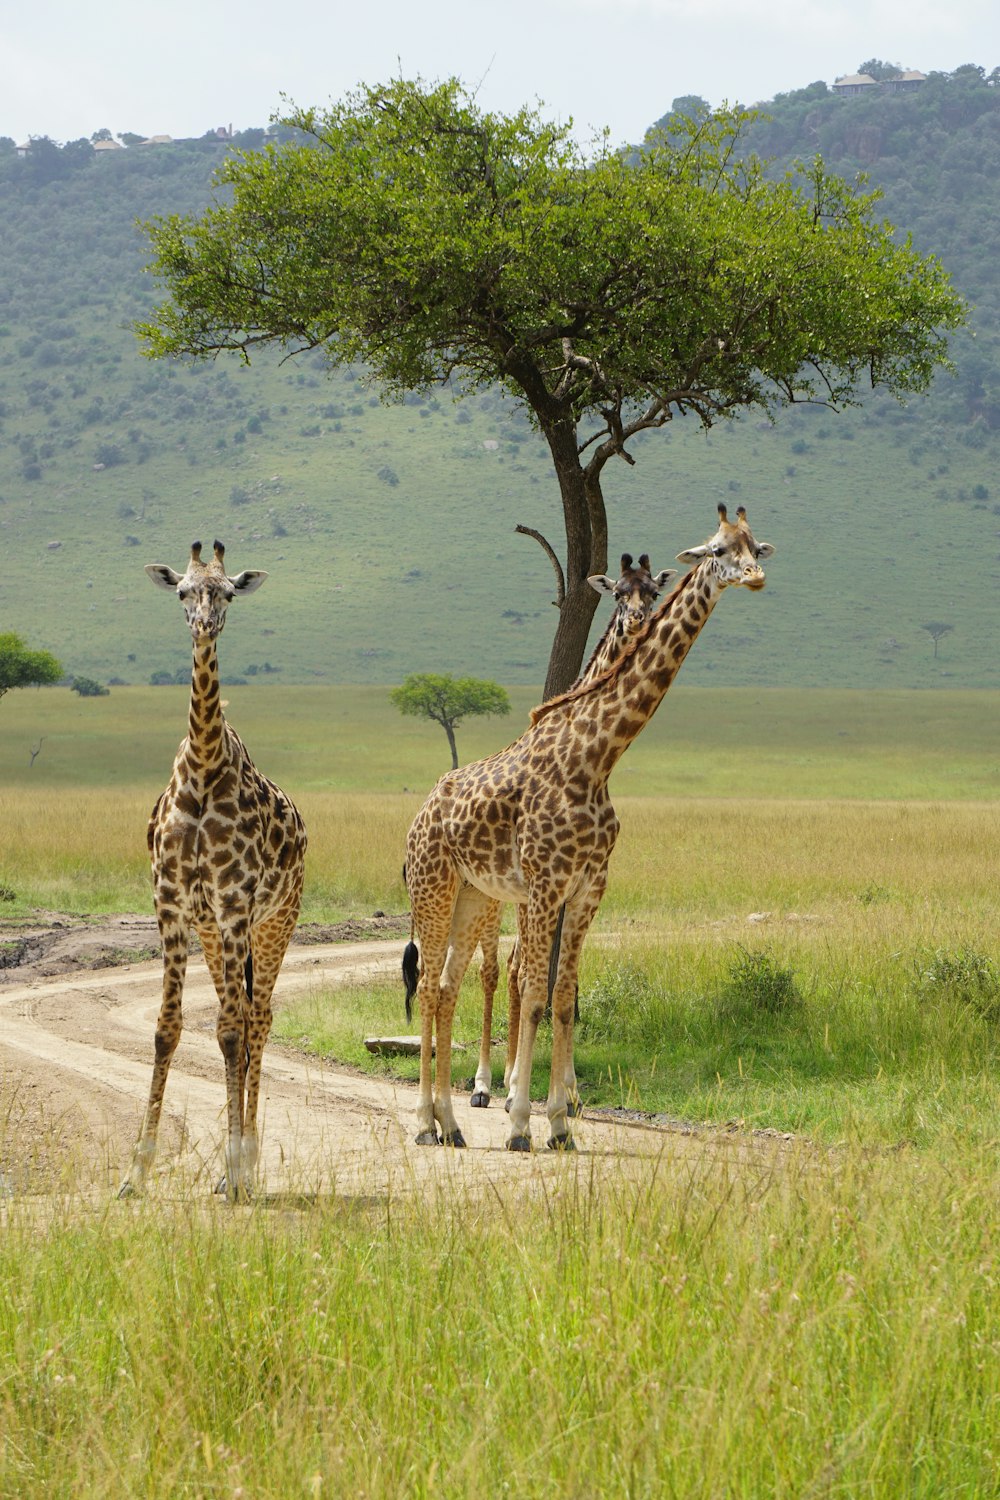 2 giraffes standing on green grass field during daytime